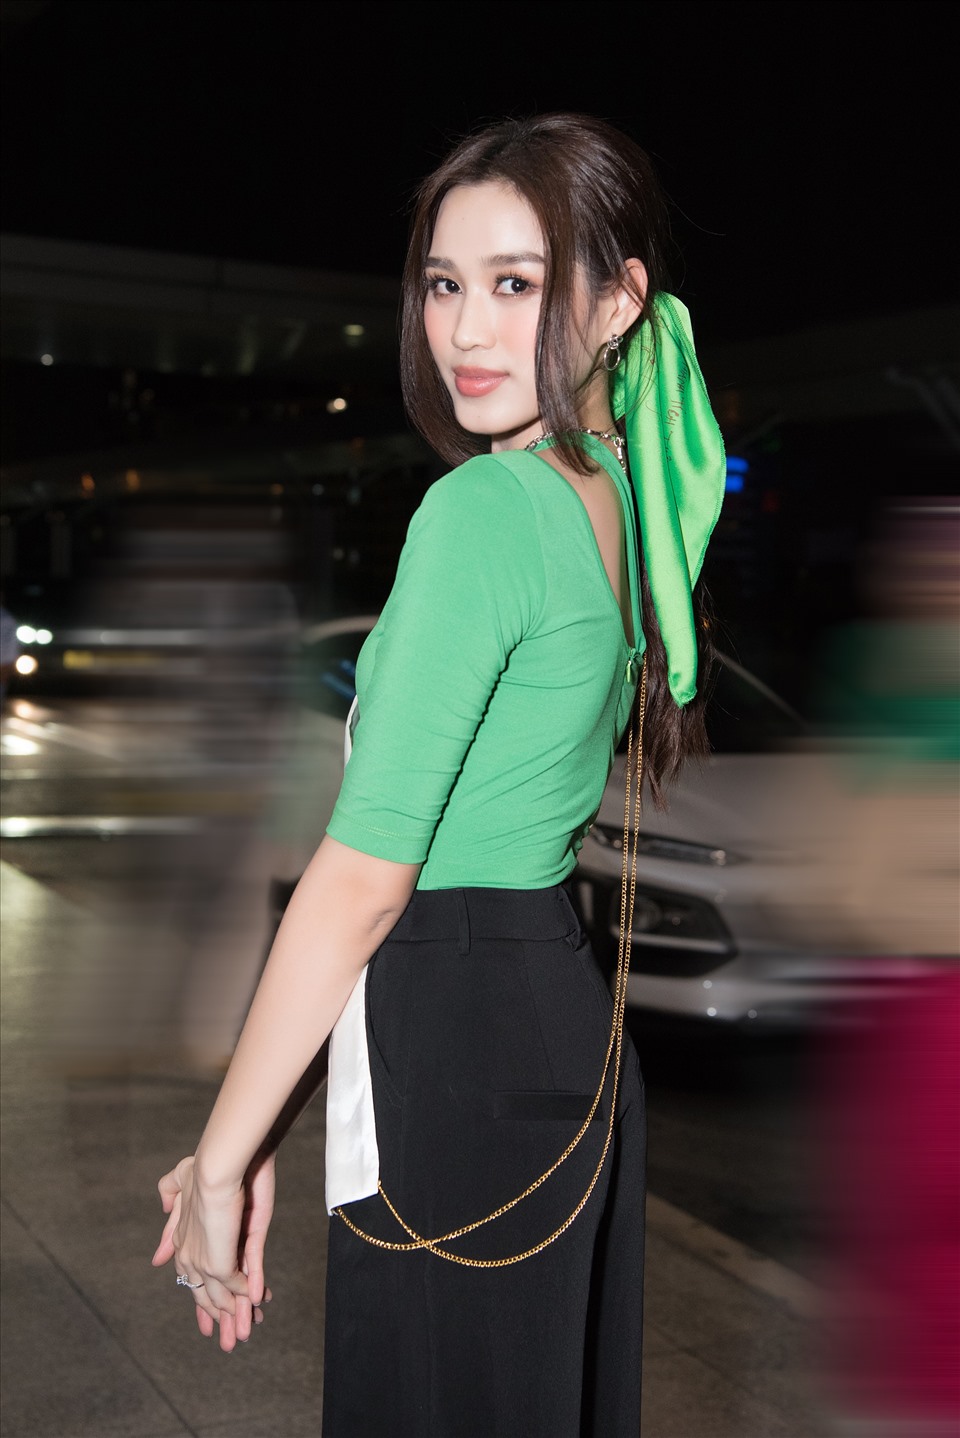 Xuất hiện tại sân bay lần này, Đỗ Hà diện cho mình bộ trang phục đơn giản, nữ tính với điểm nhấn là chiếc áo xanh cut-out